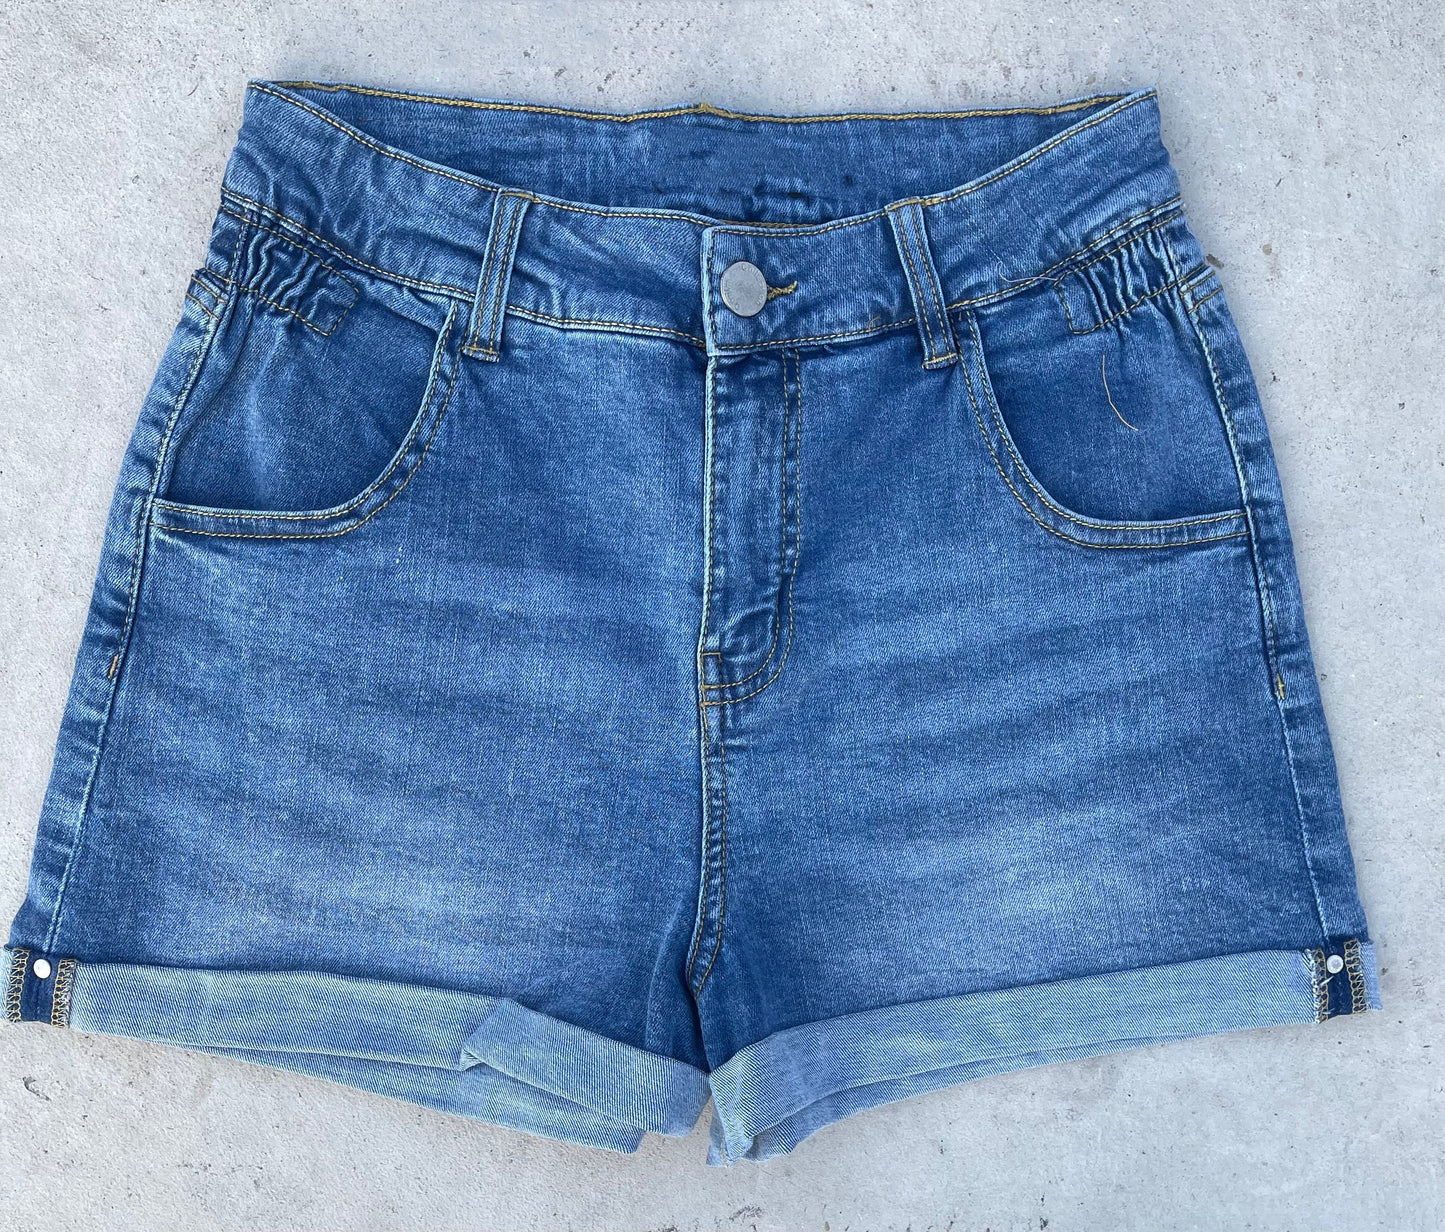 Short shorts – Dm Boutique